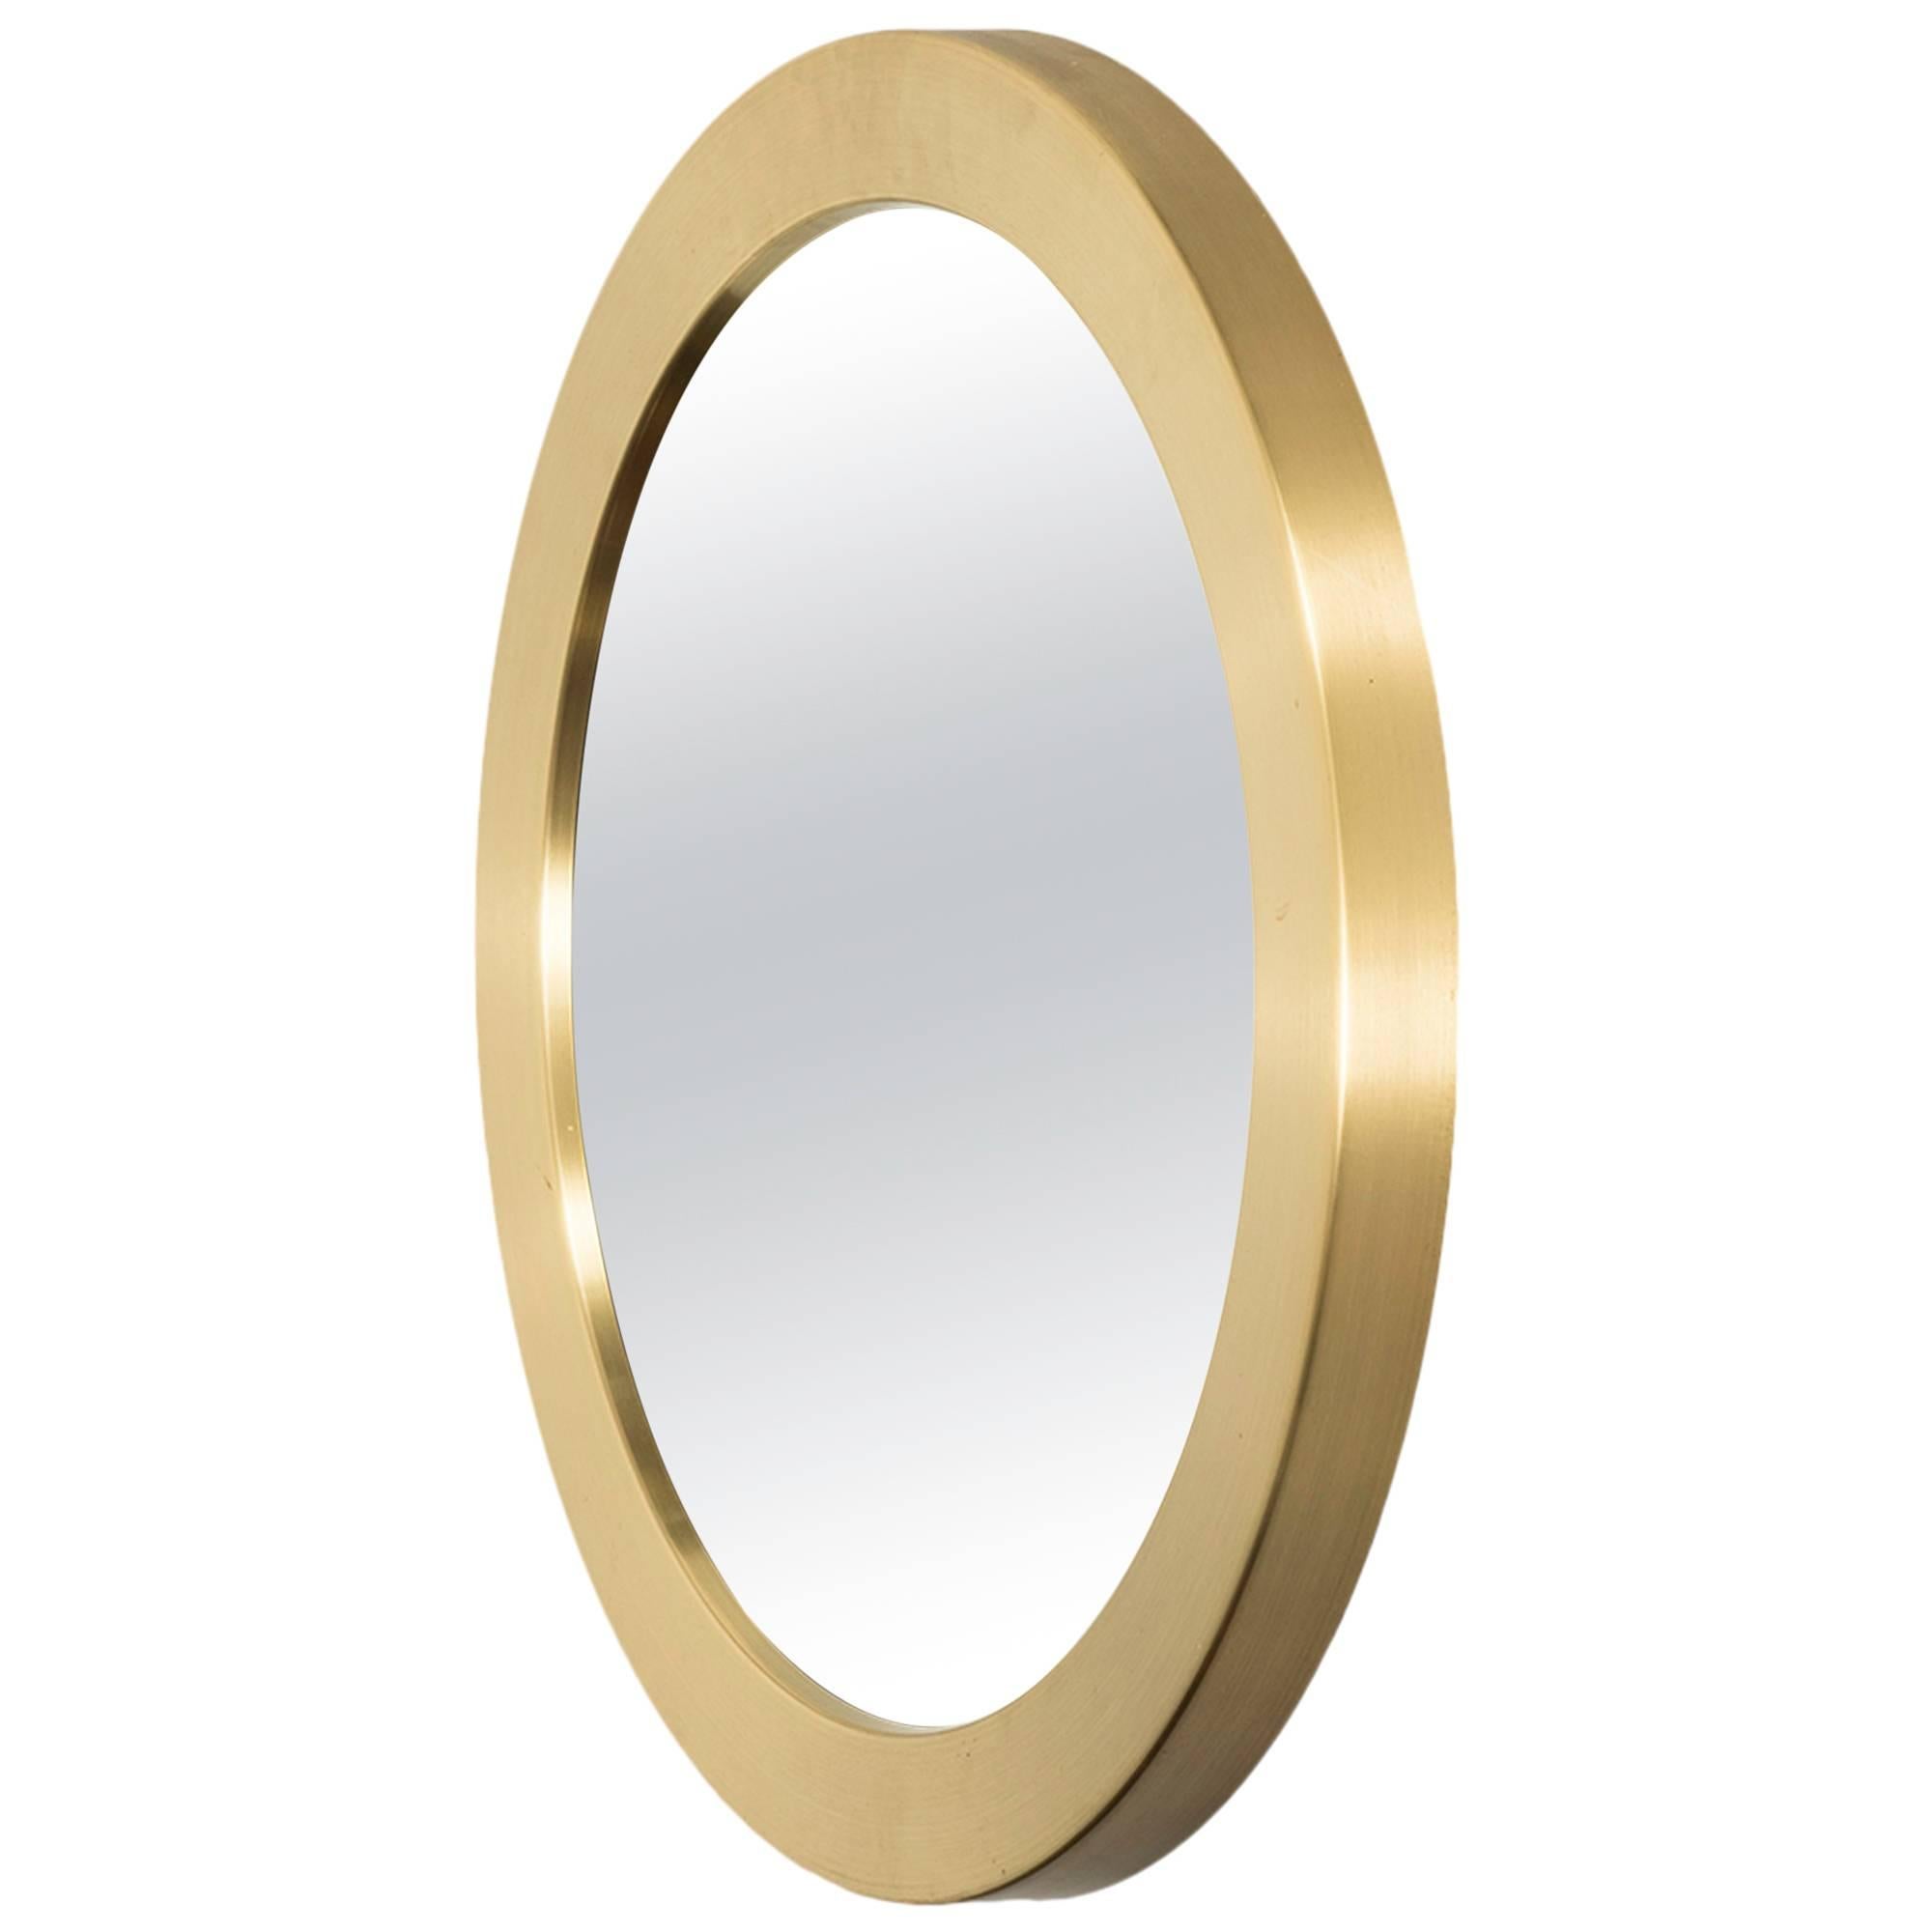 Round Mirror in Brass Model Nr 134 by Glasmäster in Sweden